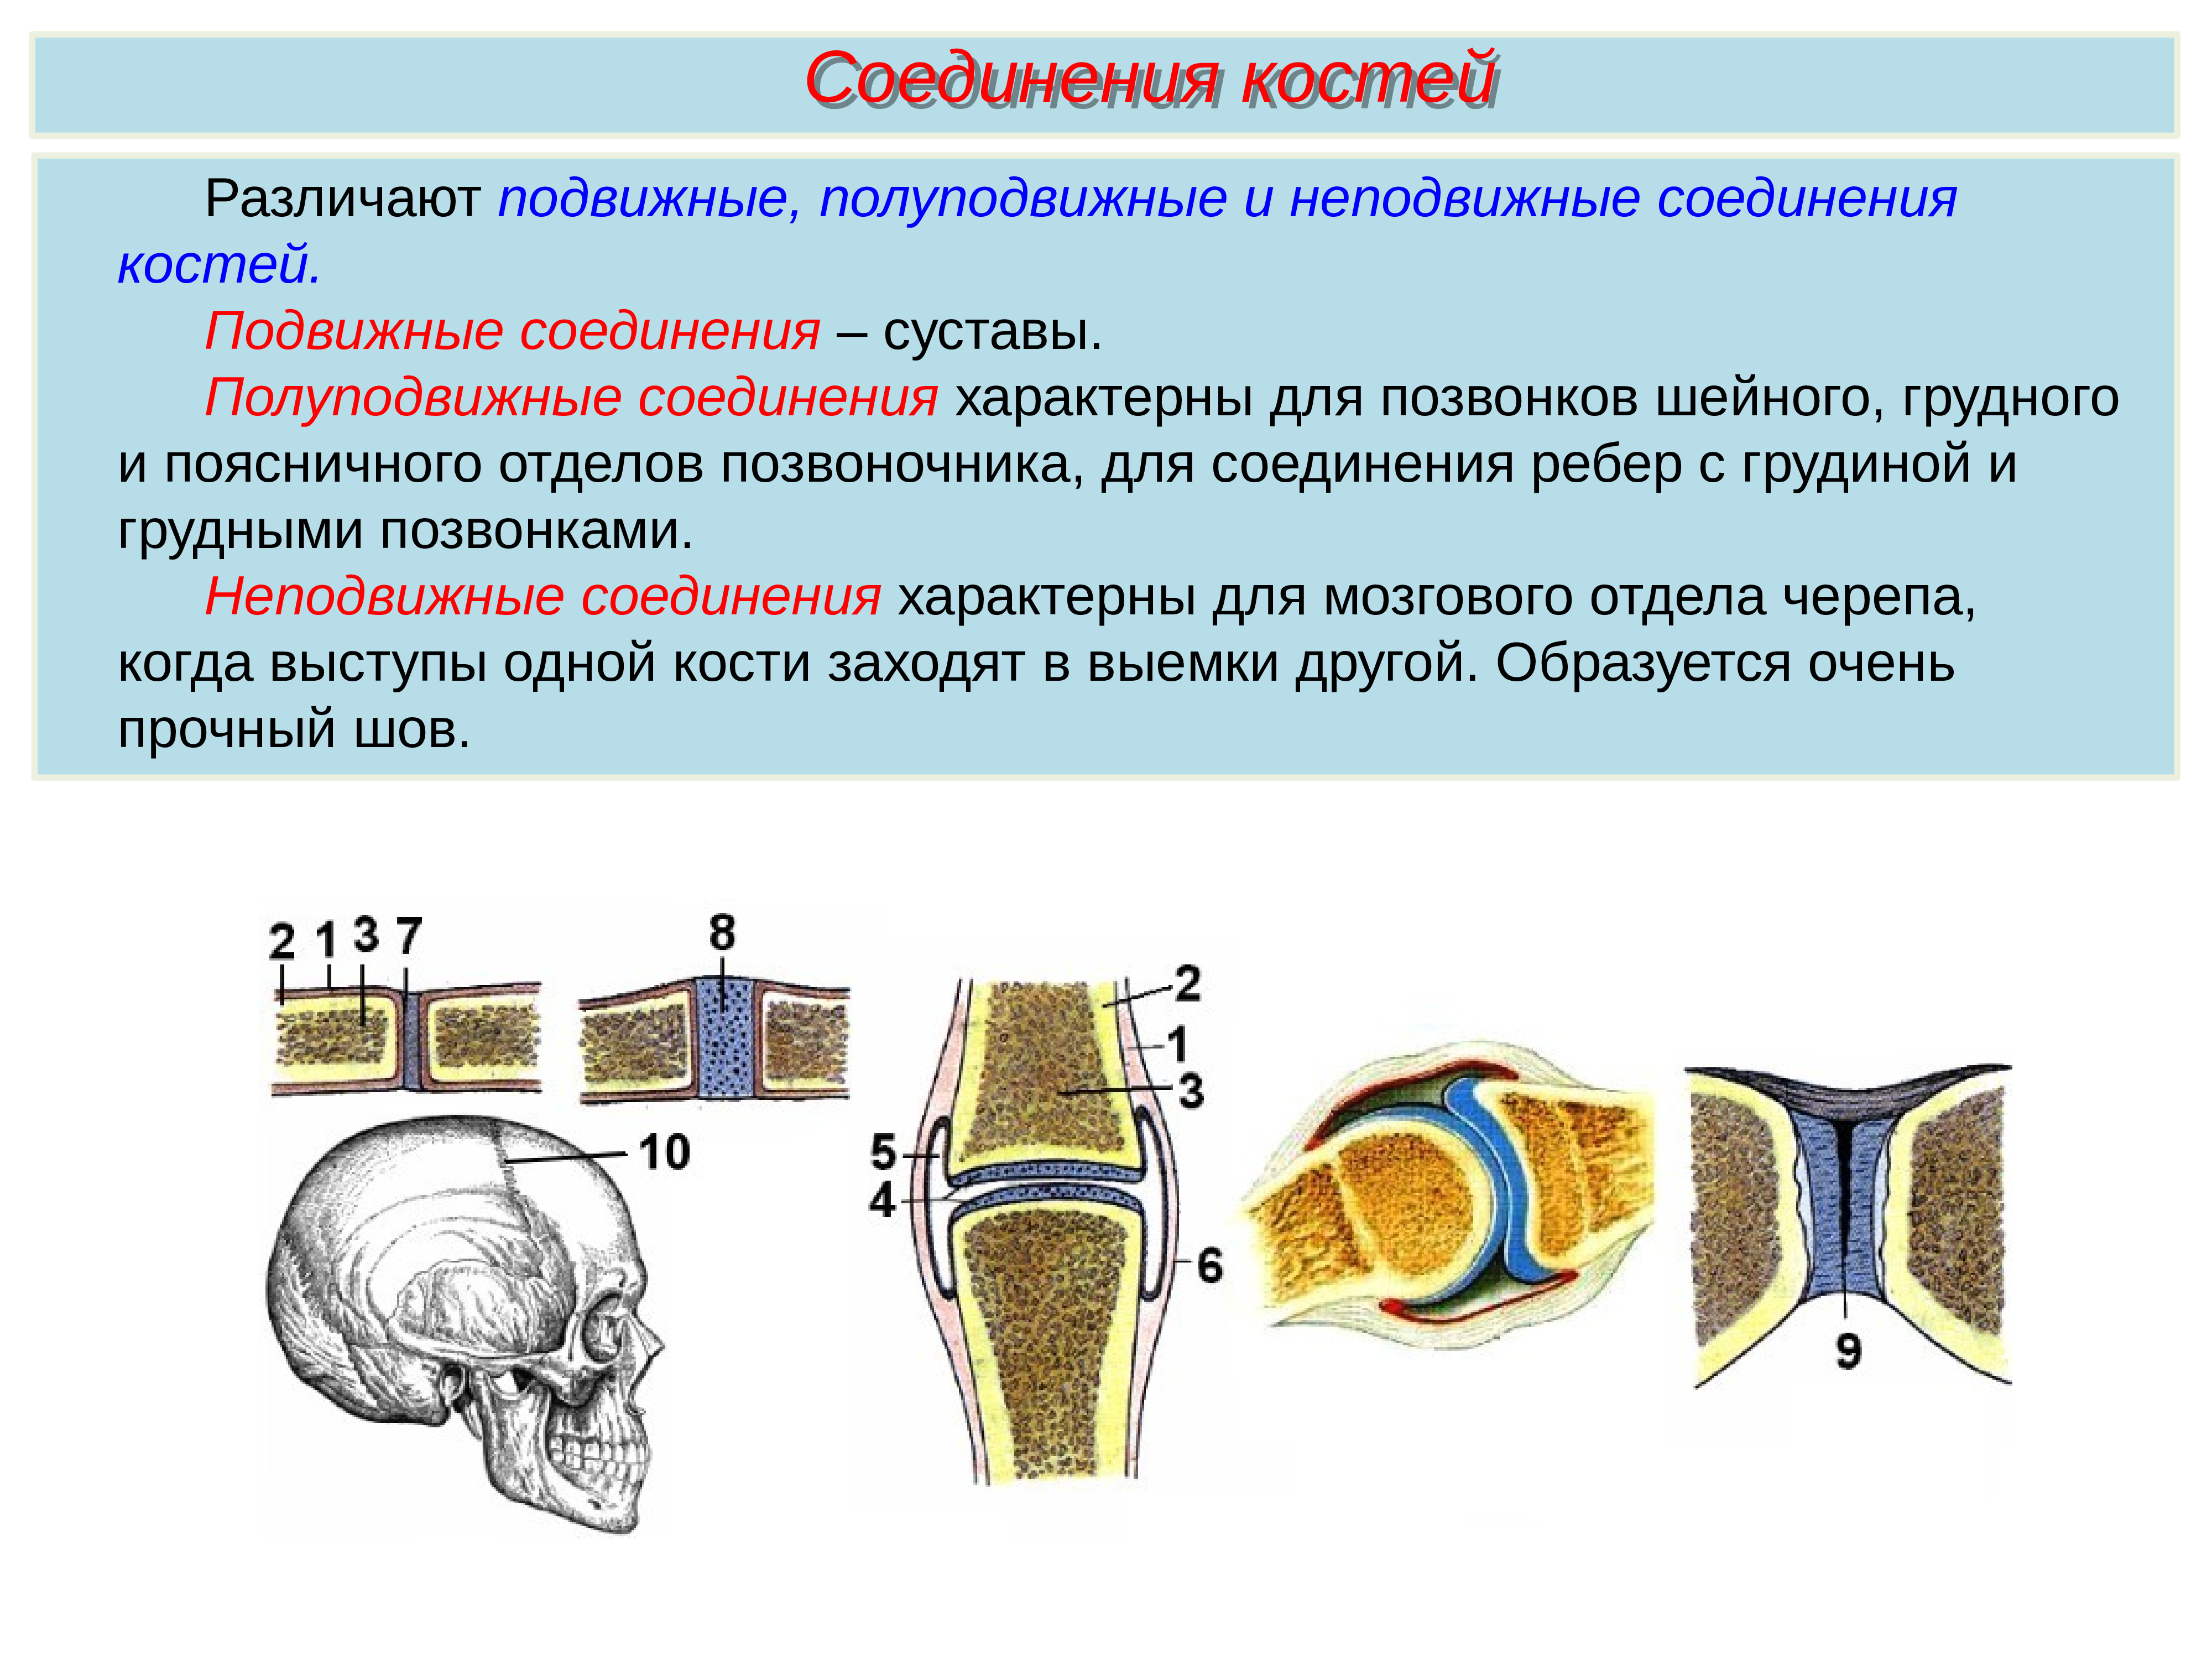 Сустав 2 соединение костей. Неподвижные полуподвижные и подвижные соединения костей. Соединение костей 8 класс биология. Соединения костей скелета классификация суставов. Соединение костей человека биология 8 класс.